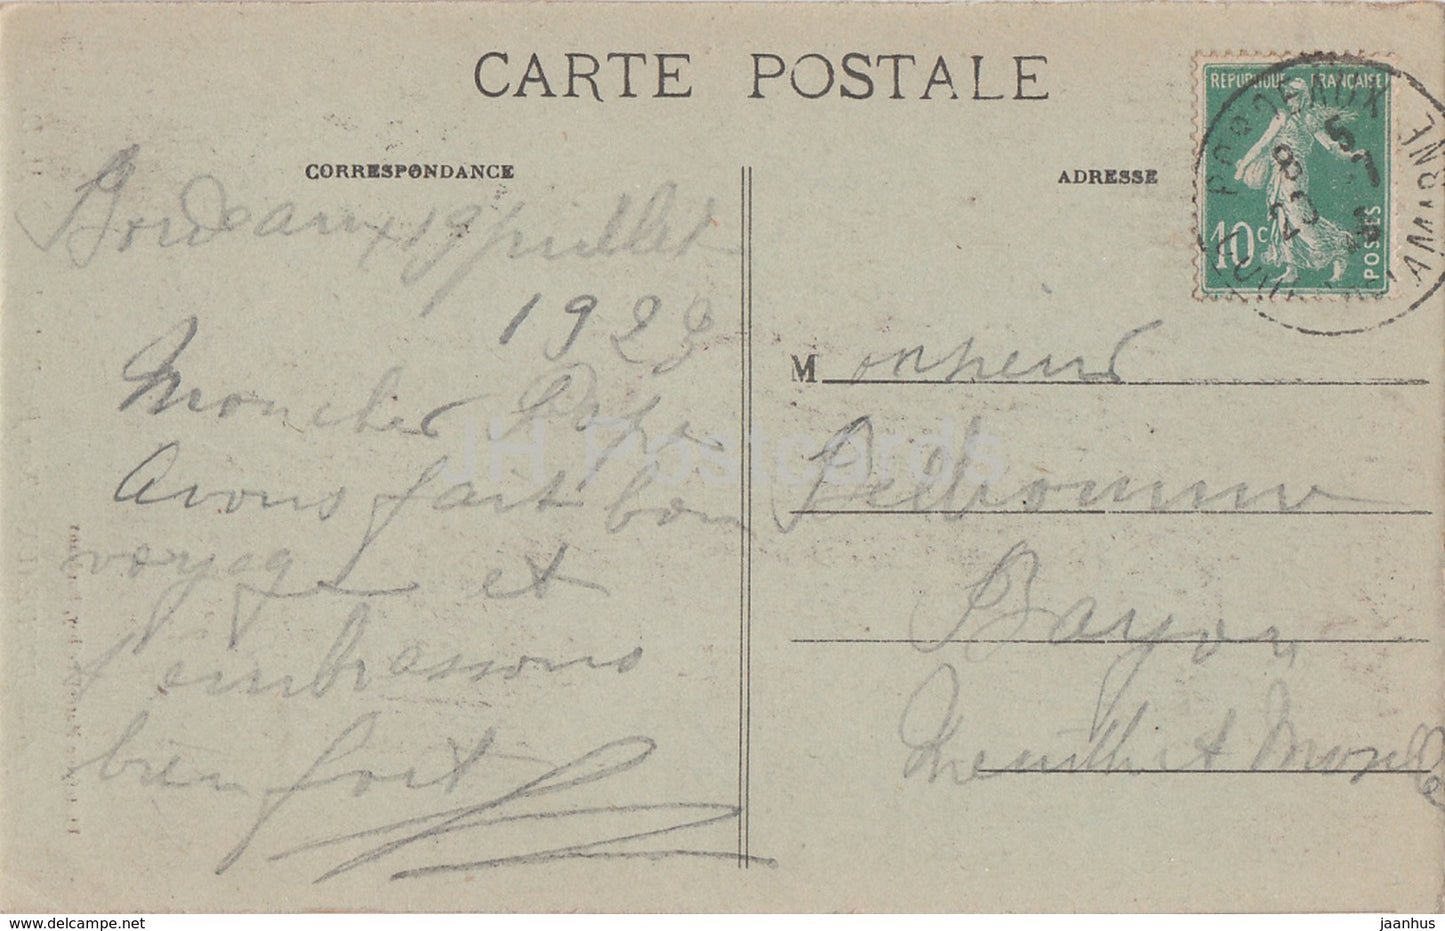 Bordeaux - La Tour Pey Berland - 146 - old postcard - 1923 - France - used